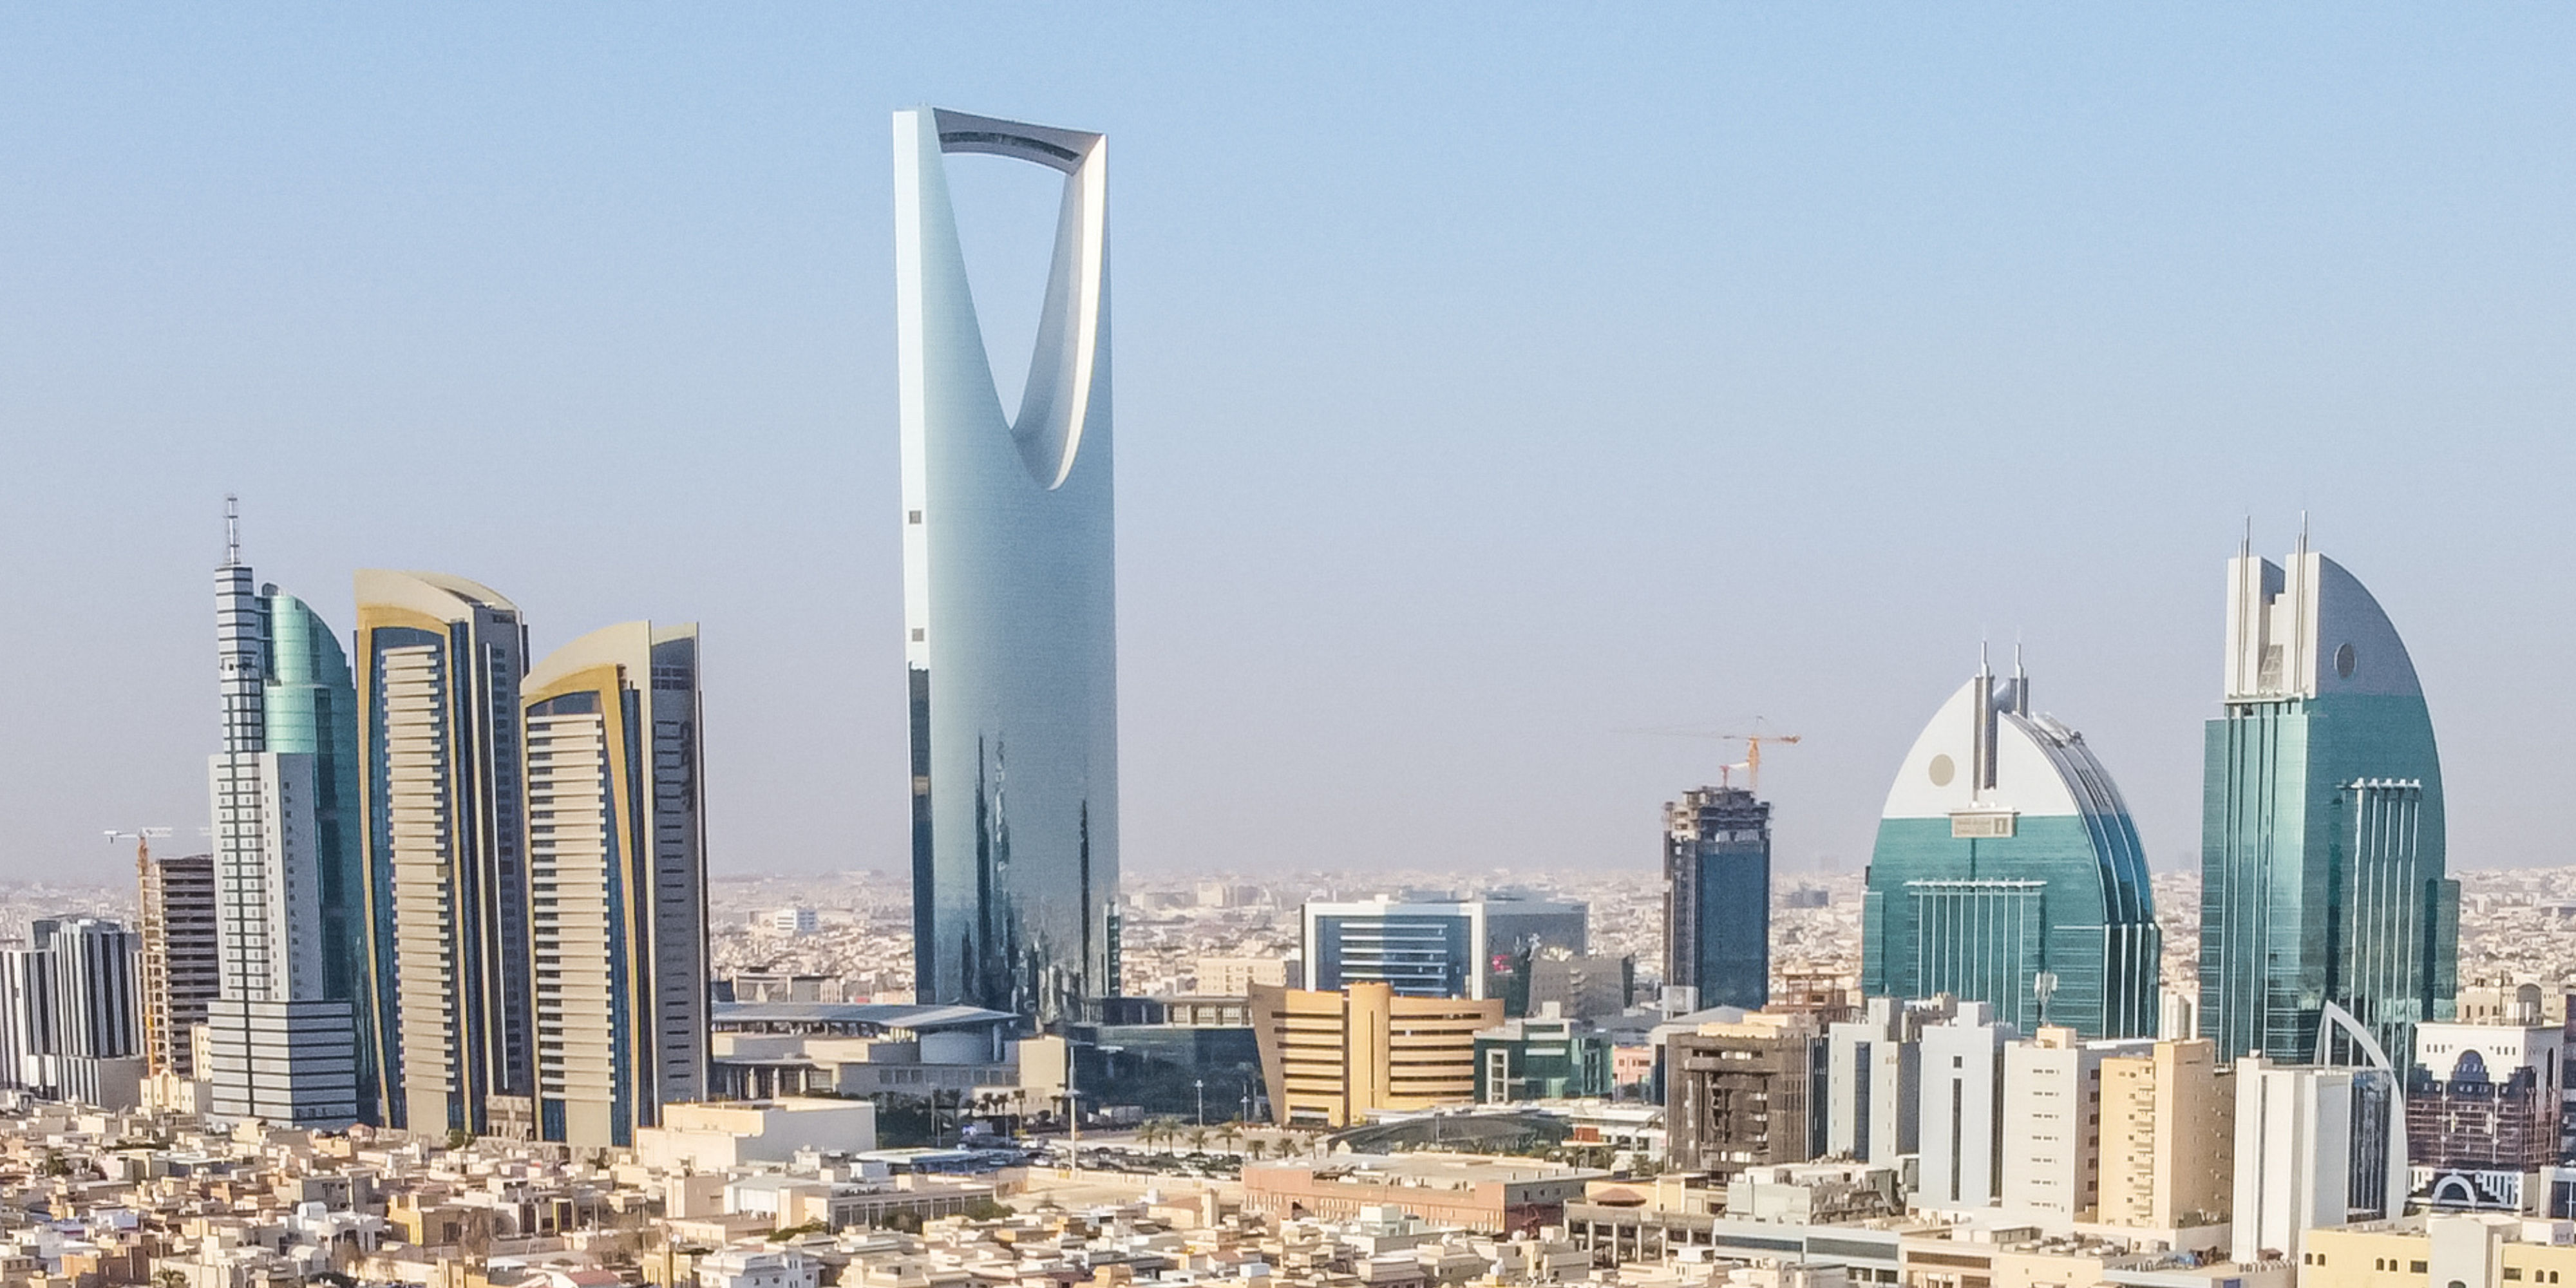 Nagy körutazás Szaúd-Arábiában csoportos körutazás - OTP Travel utazási iroda